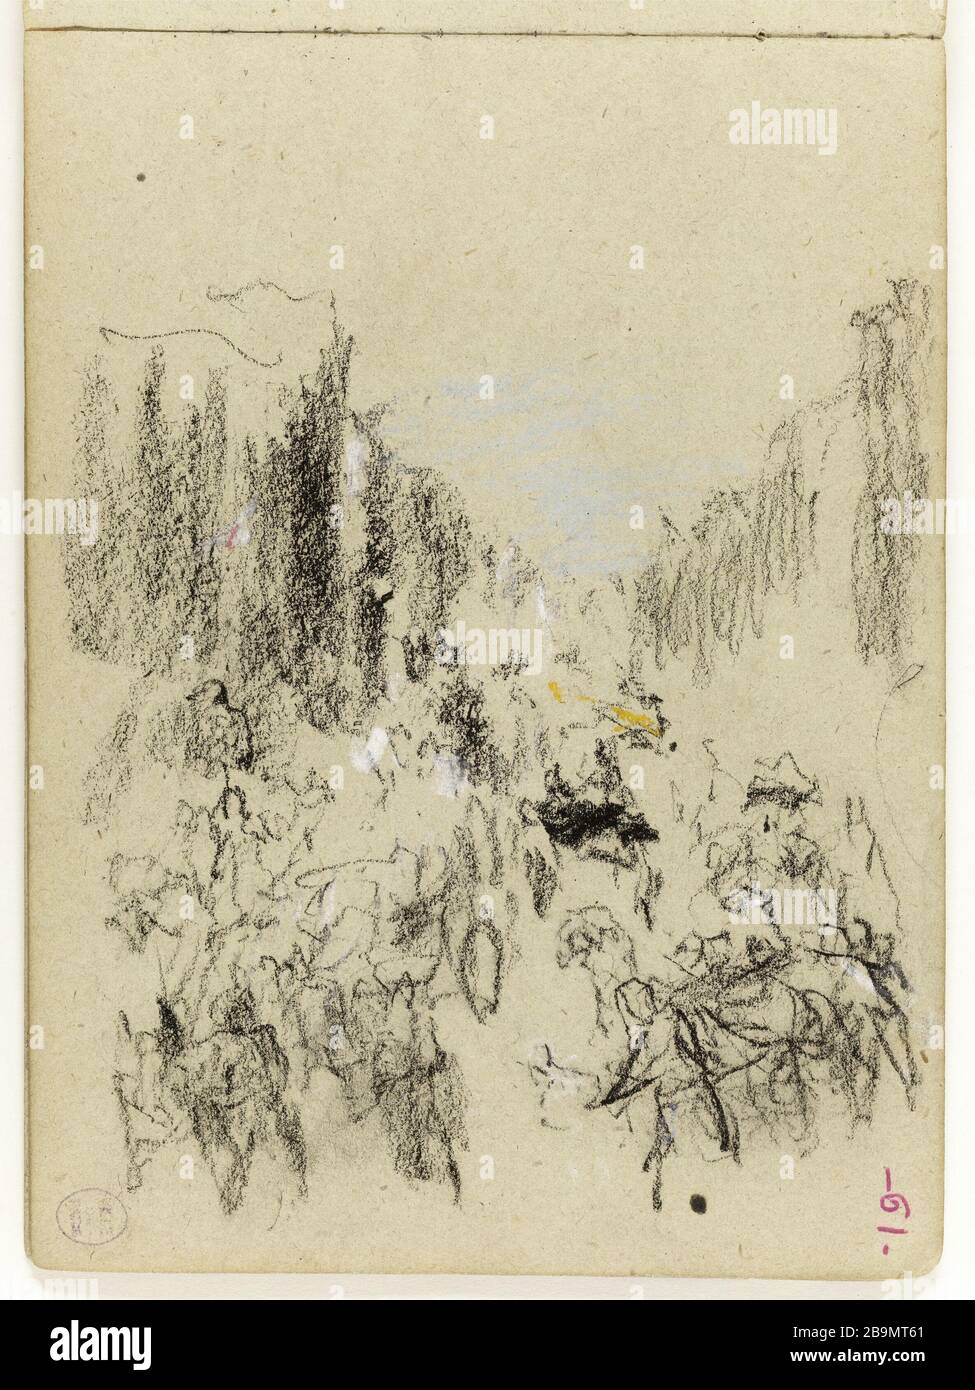 Study (p. 61 of the sketchpad). Jean-Baptiste Carpeaux (1827-1875). Etude (p. 61 du carnet de croquis). Dessin, 1870. Musée des Beaux-Arts de la Ville de Paris, Petit Palais. Stock Photo